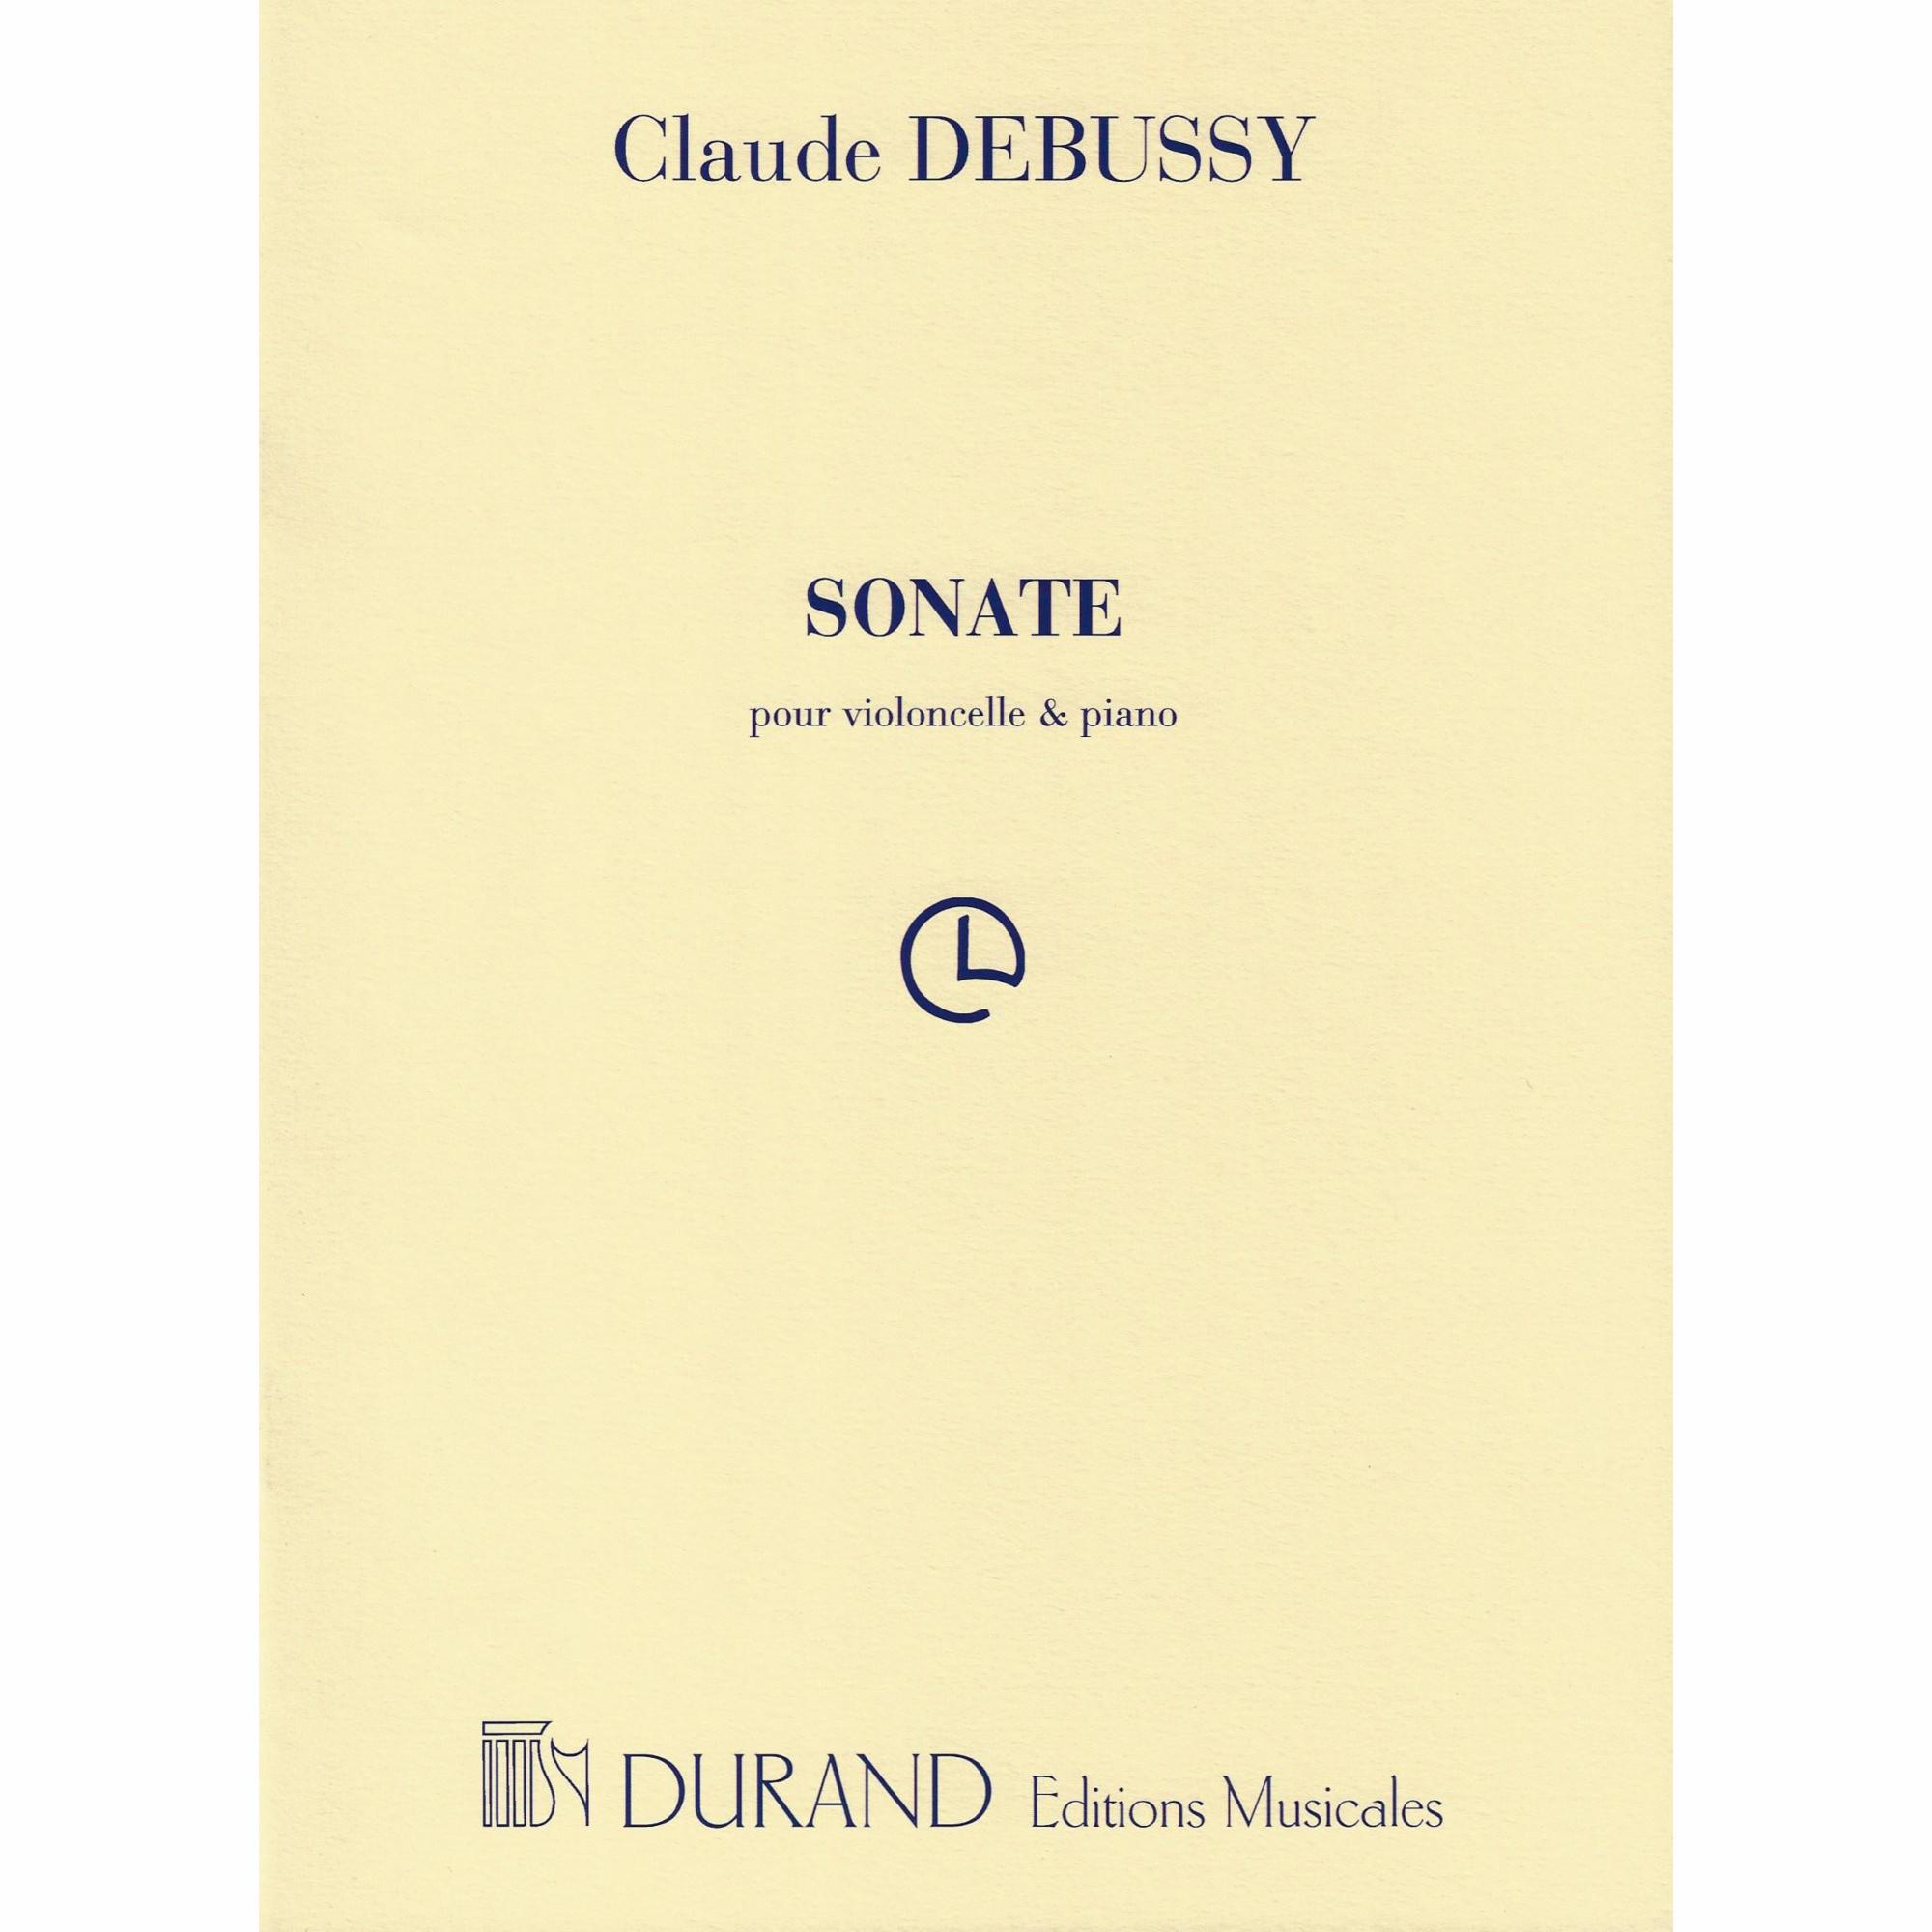 Debussy -- Sonata for Cello and Piano